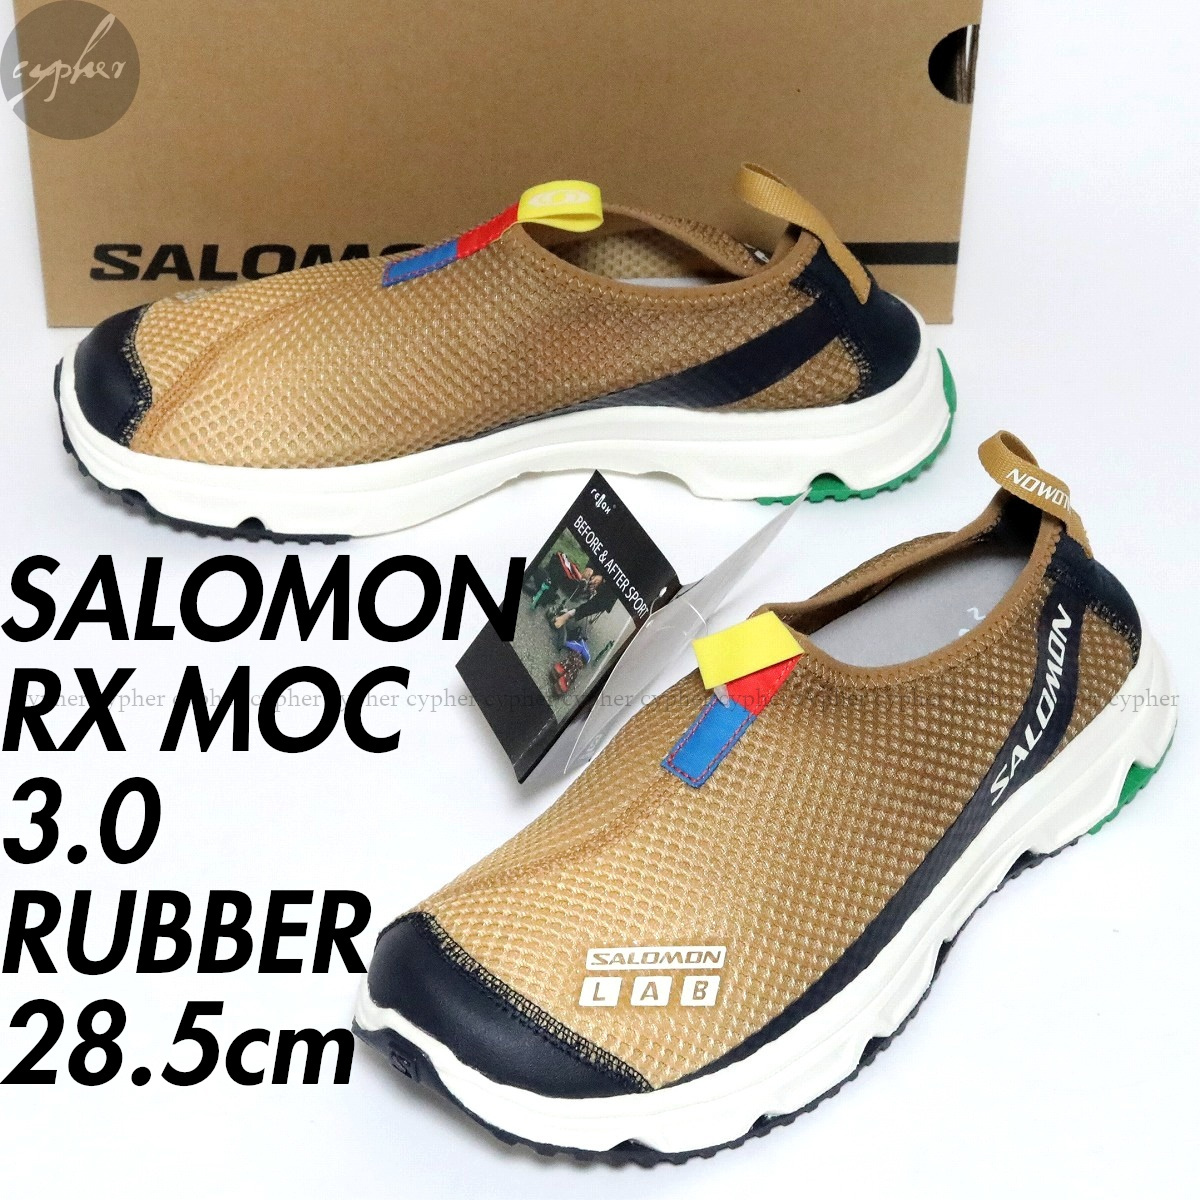 UK10 28.5cm 新品 SALOMON RX MOC 3.0 Rubber Taffy Granada Sky サロモン モック スニーカー スリッポン シューズ ブラウン ベージュ_画像1